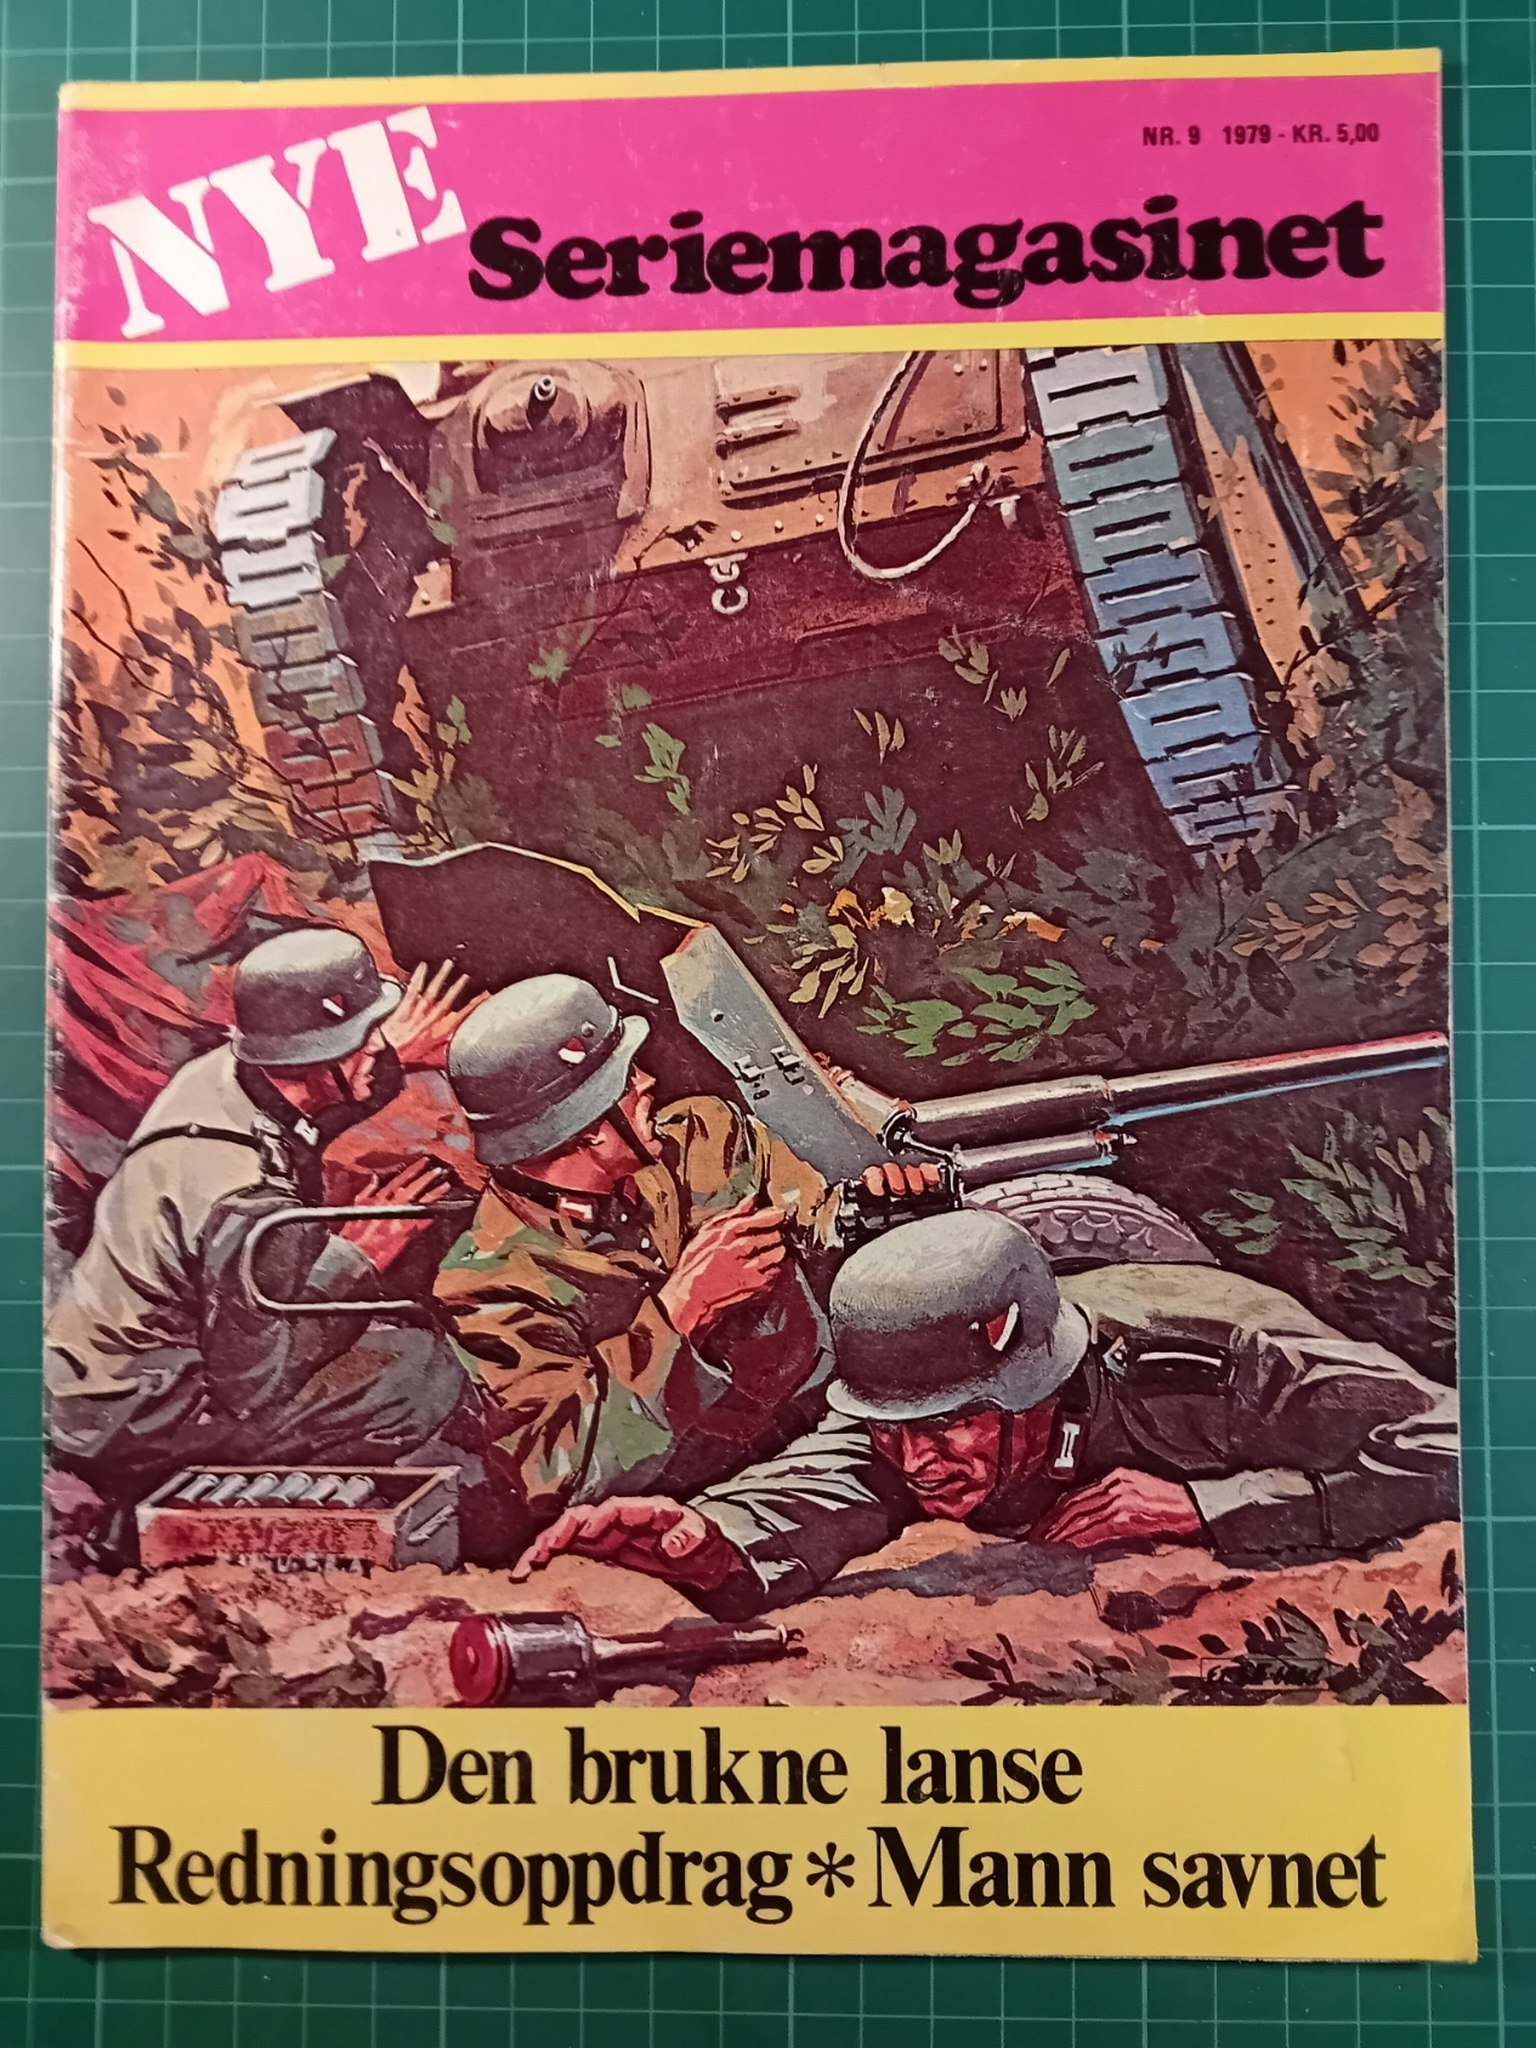 Seriemagasinet (Nye) 1979 - 09